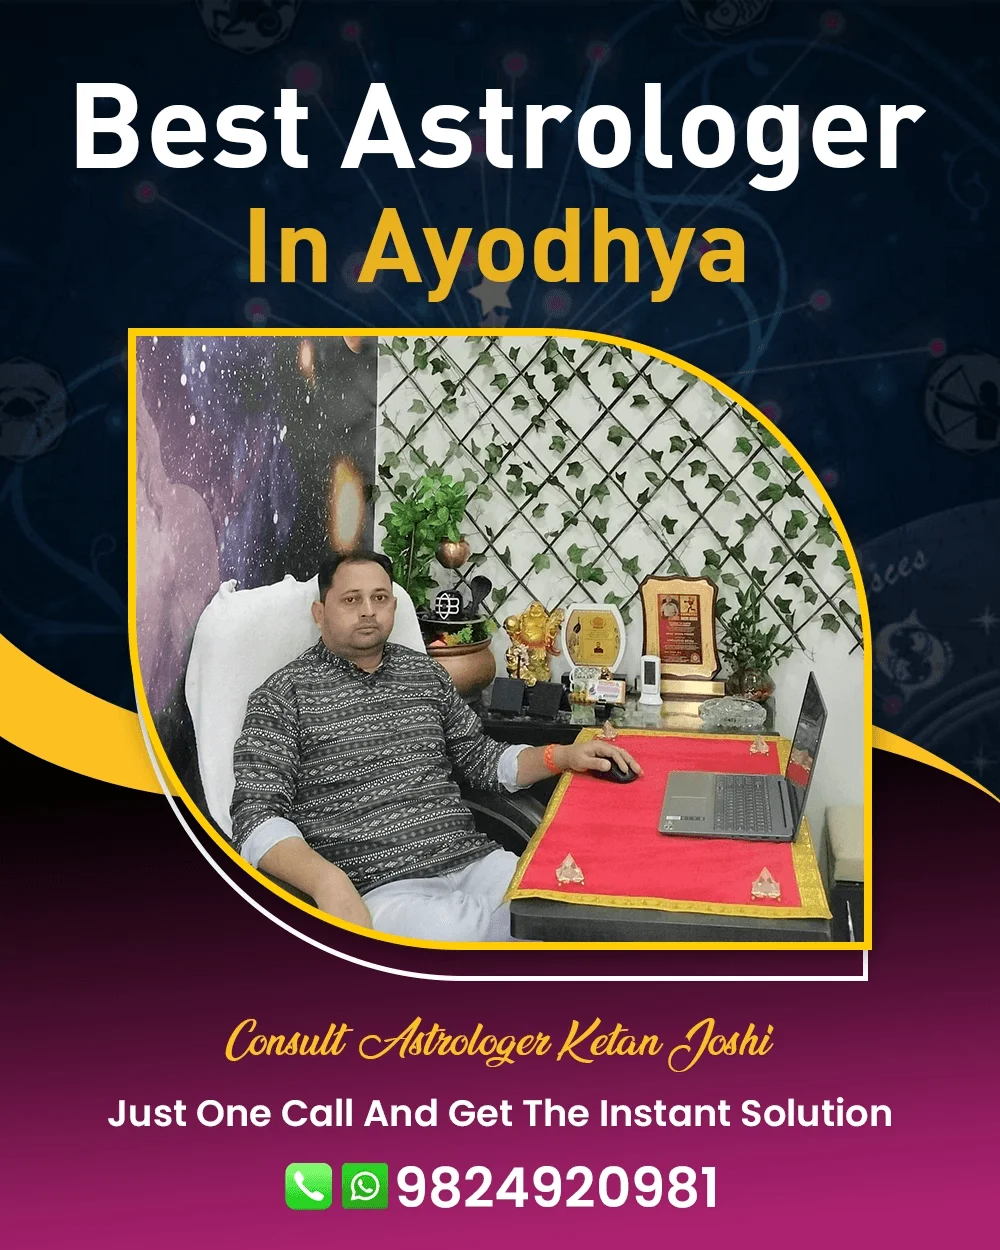 Best Astrologer In Ayodhya